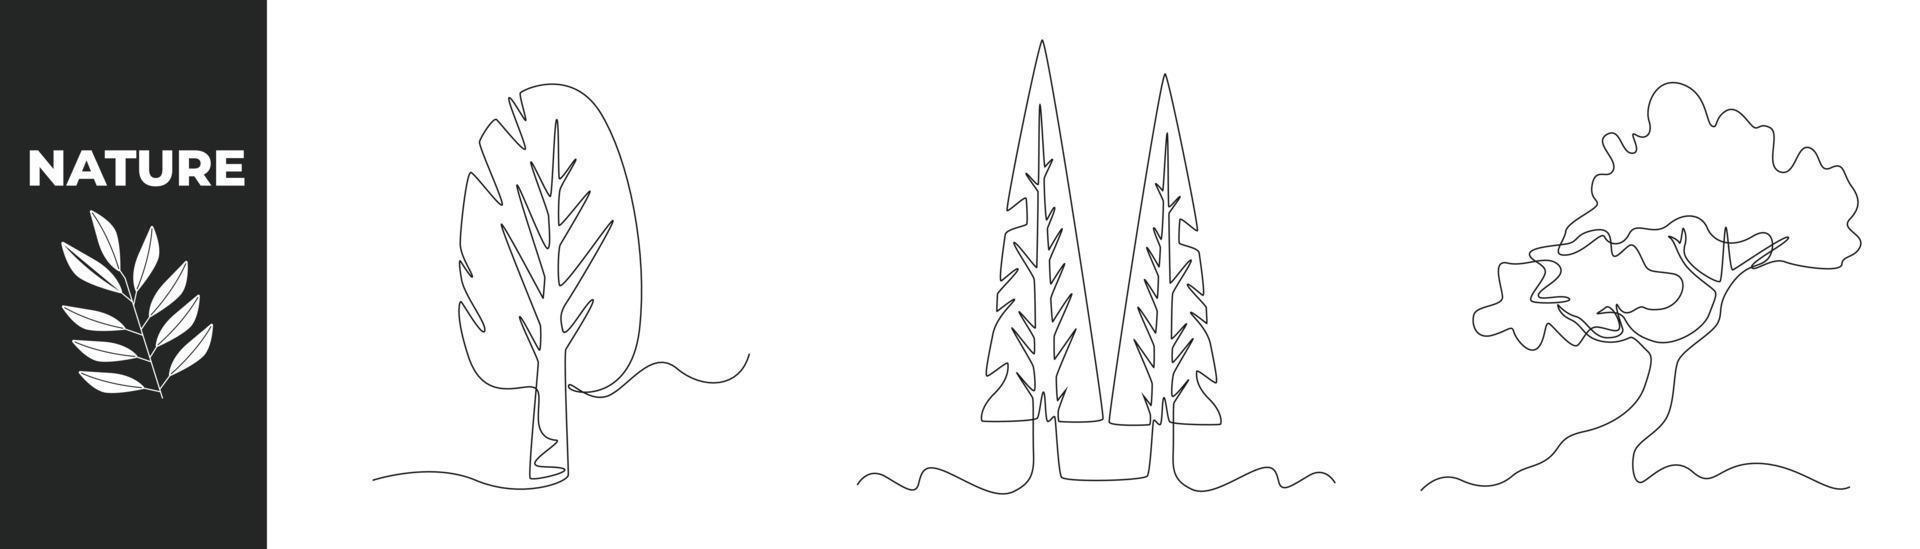 concept de jeu de nature de dessin d'une seule ligne. feuille et arbre luxuriant. illustration vectorielle graphique de conception de dessin en ligne continue. vecteur